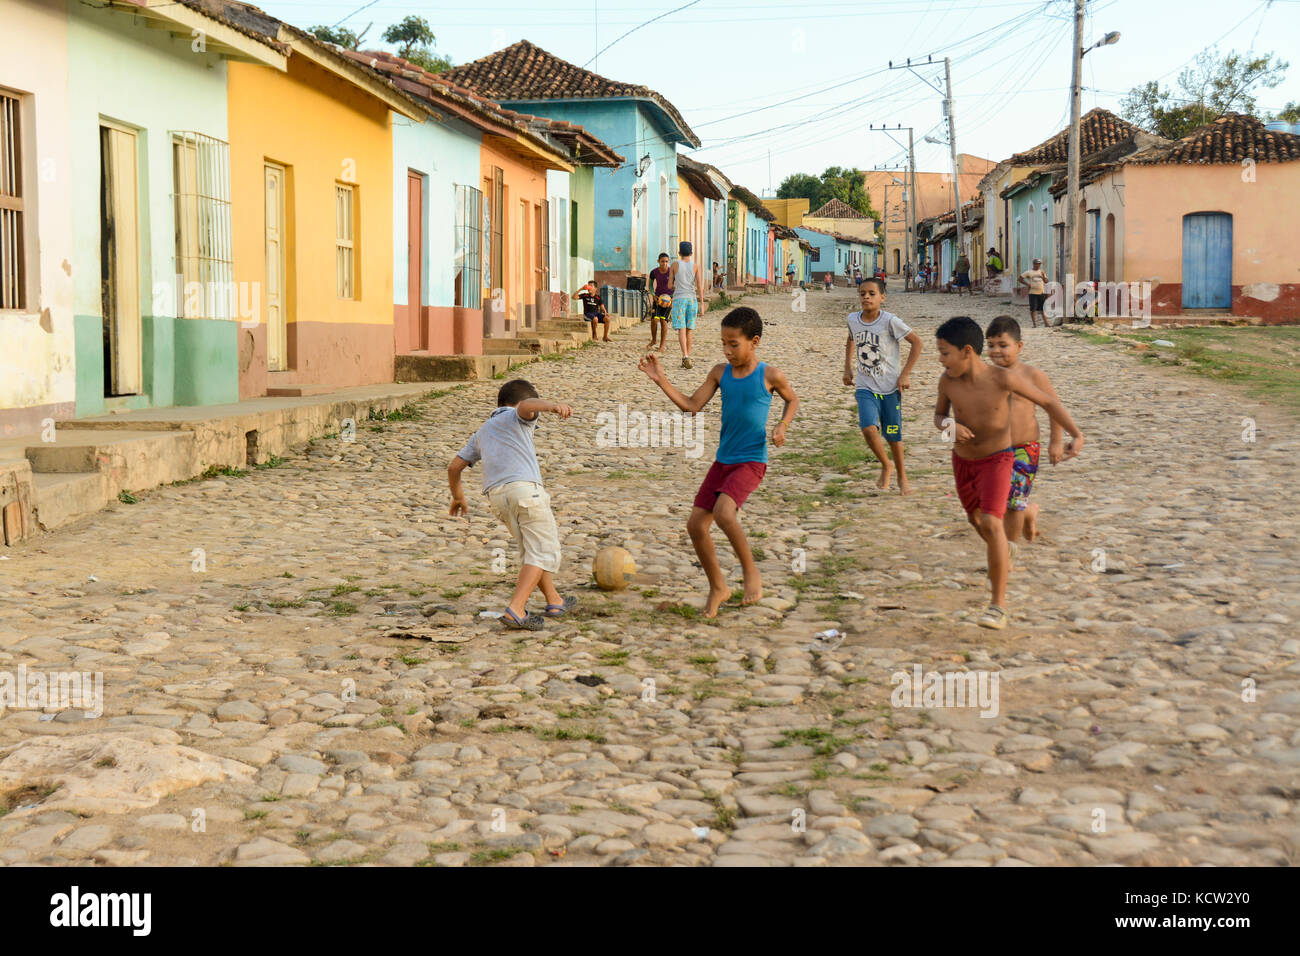 Ragazzi giocare a calcio da una fila di case colorate, Trinidad, Cuba Foto Stock